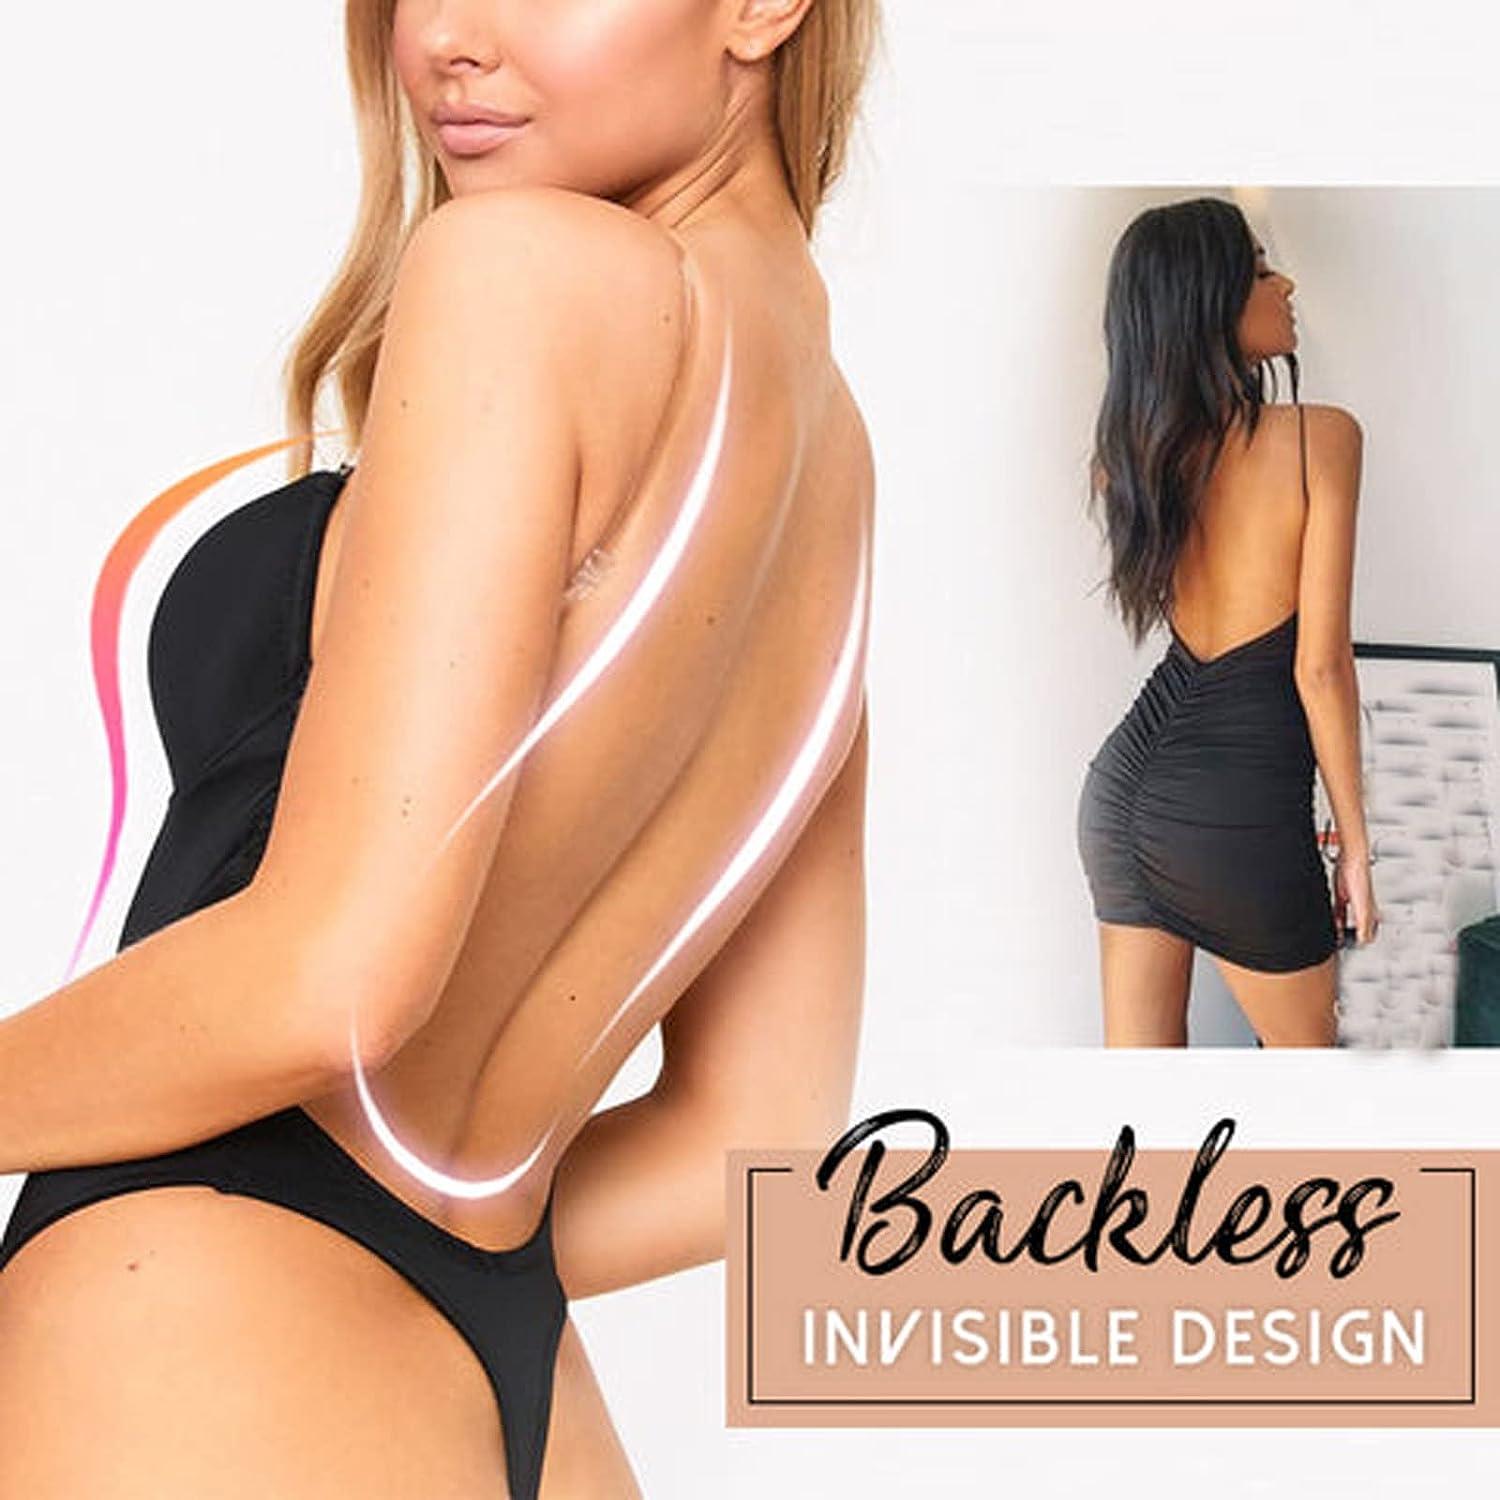 GHAKKE Women's Sexy Backless Shapewear Low Back Bodysuit Tummy